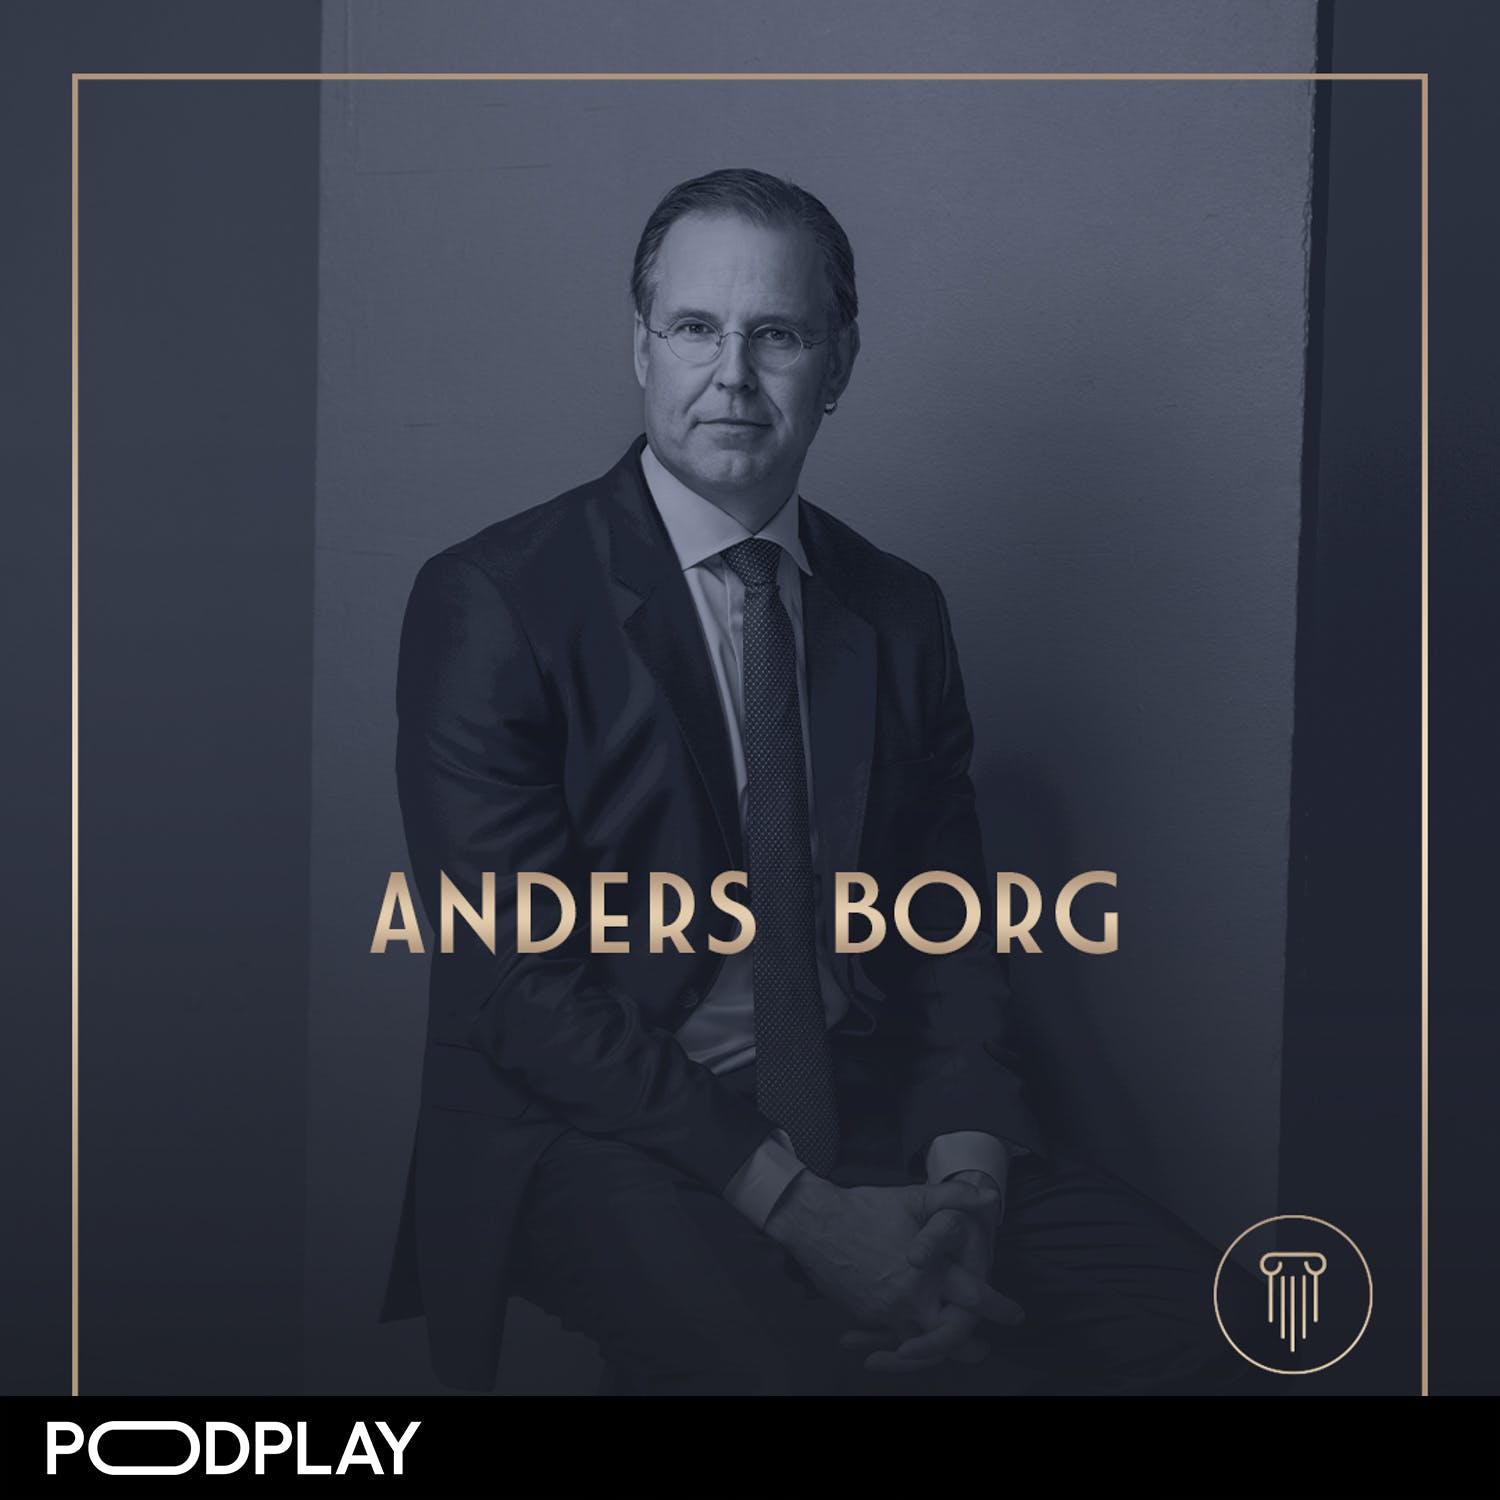 336. Anders Borg - Då blir nästa finanskris..., Short